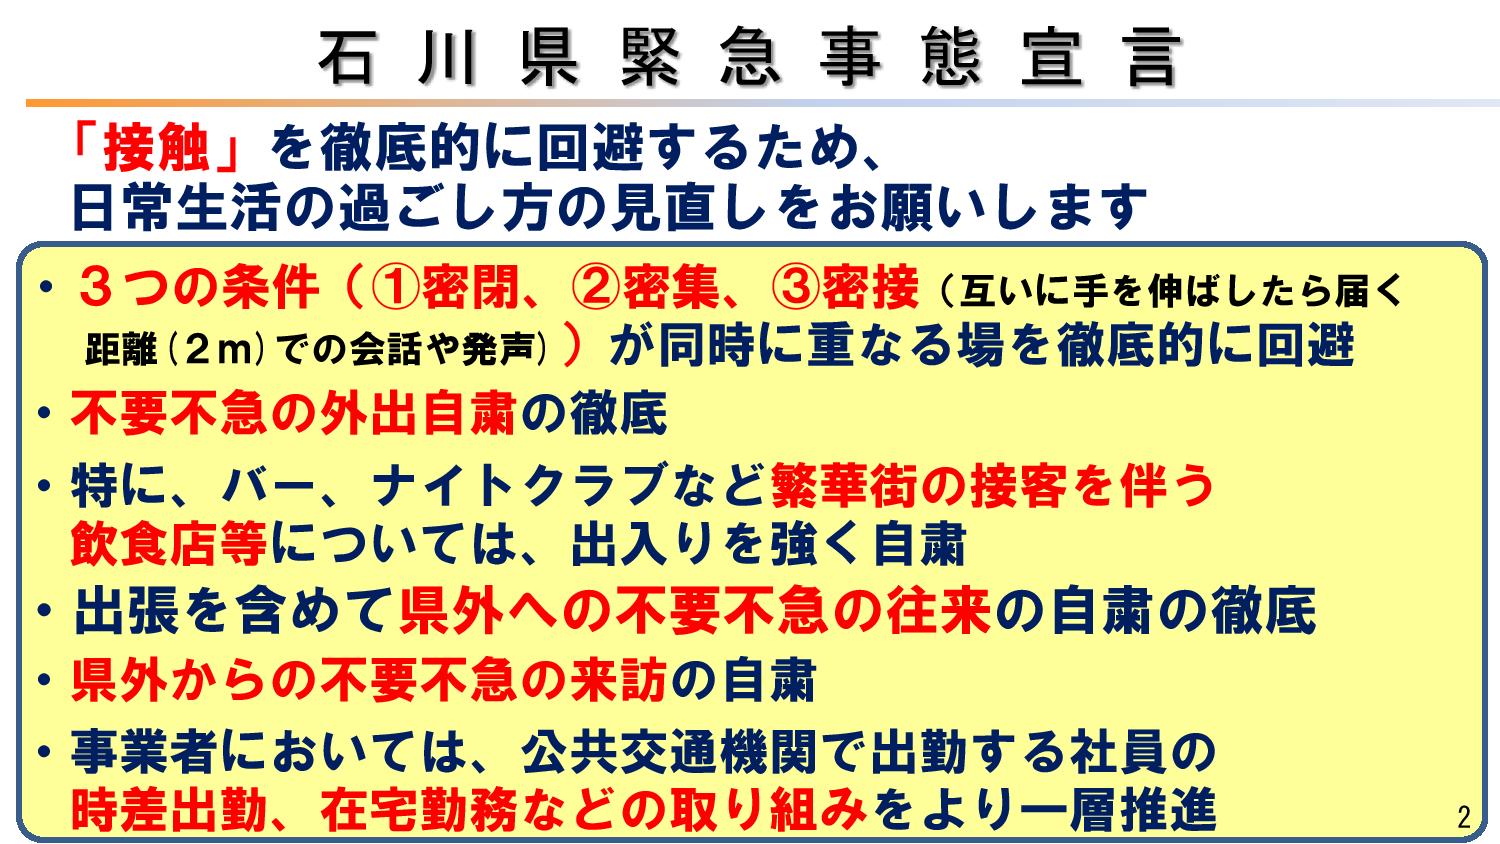 石川県緊急事態宣言